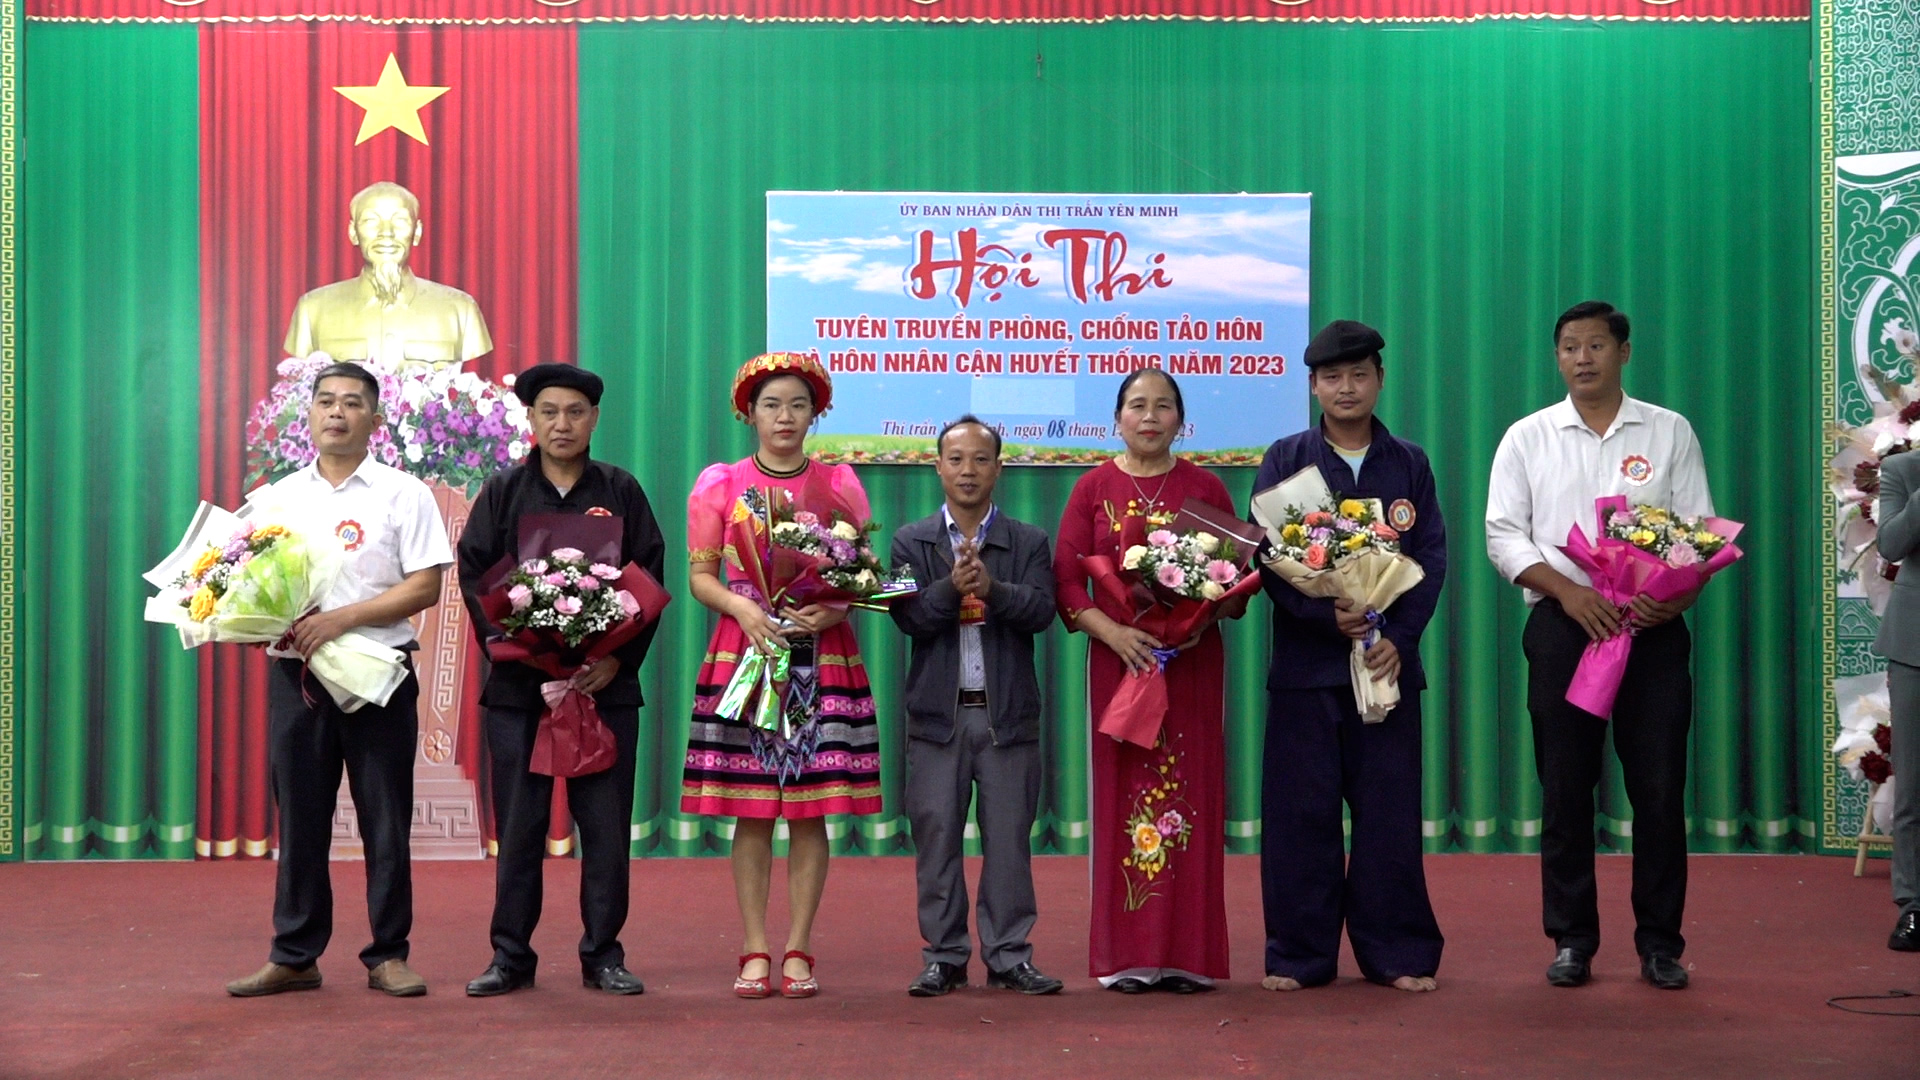 Thị trấn Yên Minh tổ chức hội thi tuyên truyền phòng, chống tảo hôn, hôn nhân cận huyết thống